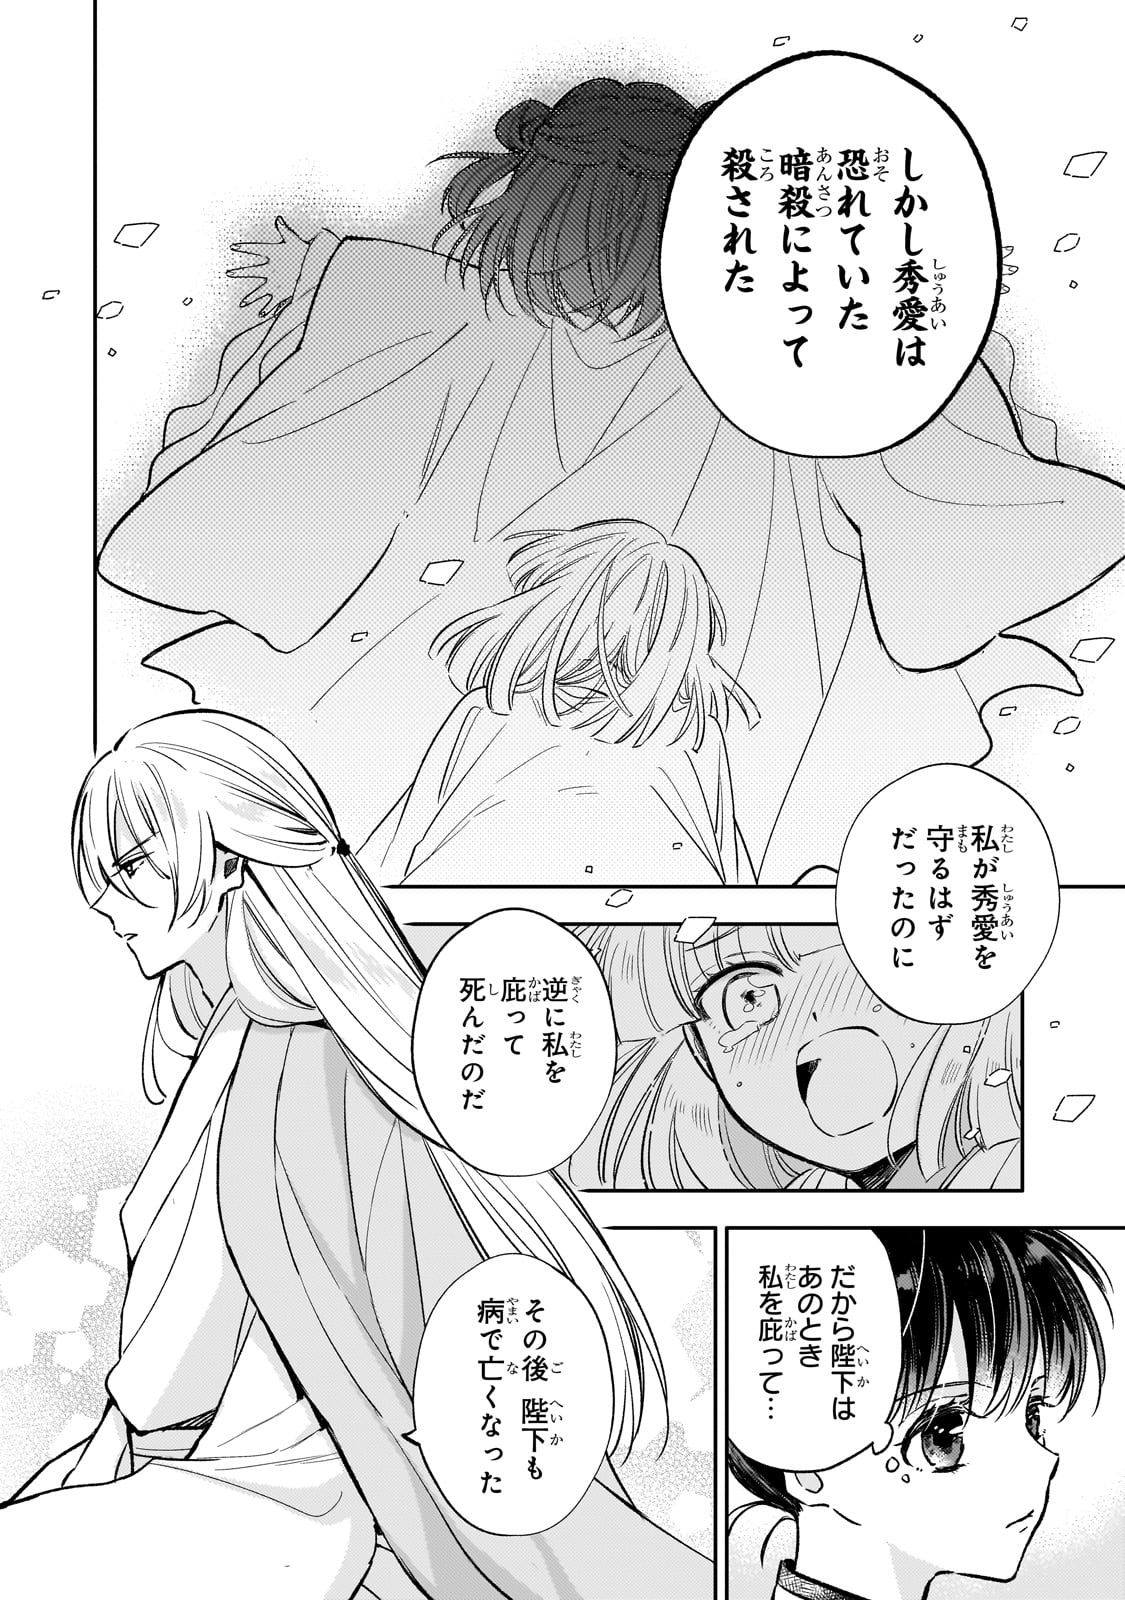 Koukyu no Zatsuyouki - Chapter 26 - Page 6